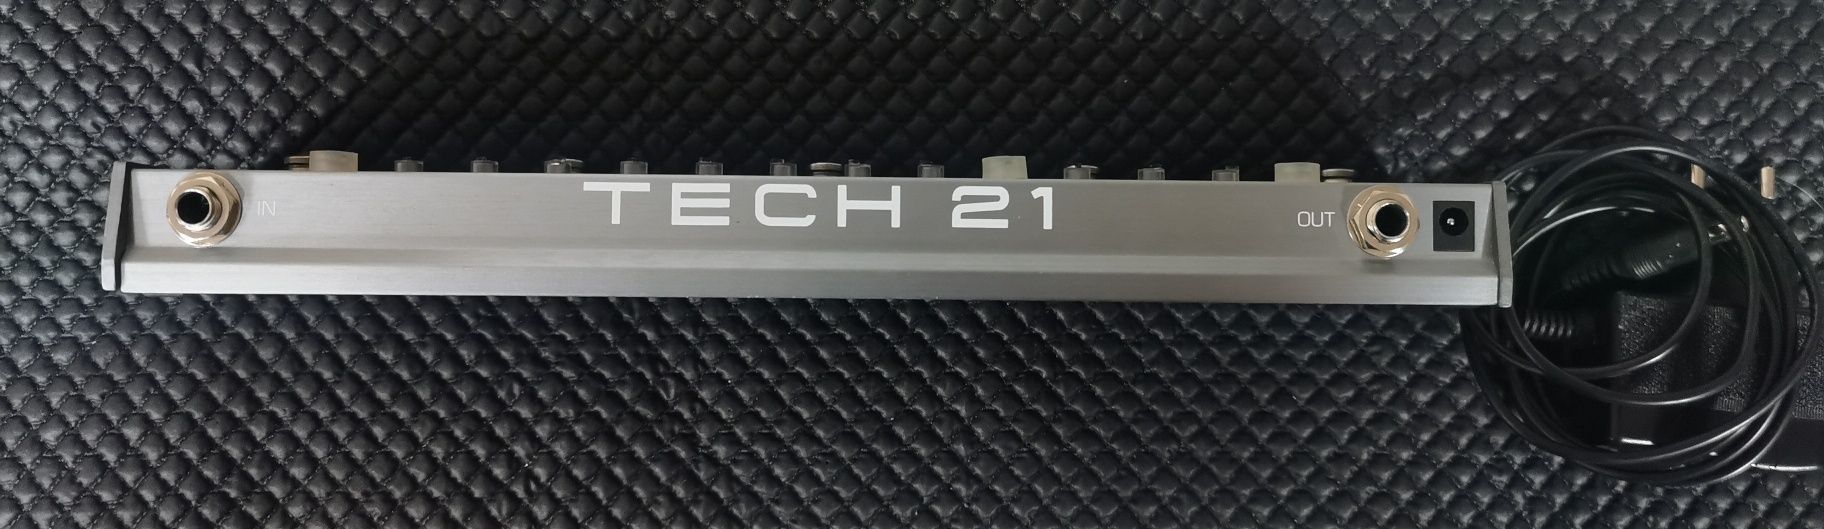 Tech 21 Flyrig 5